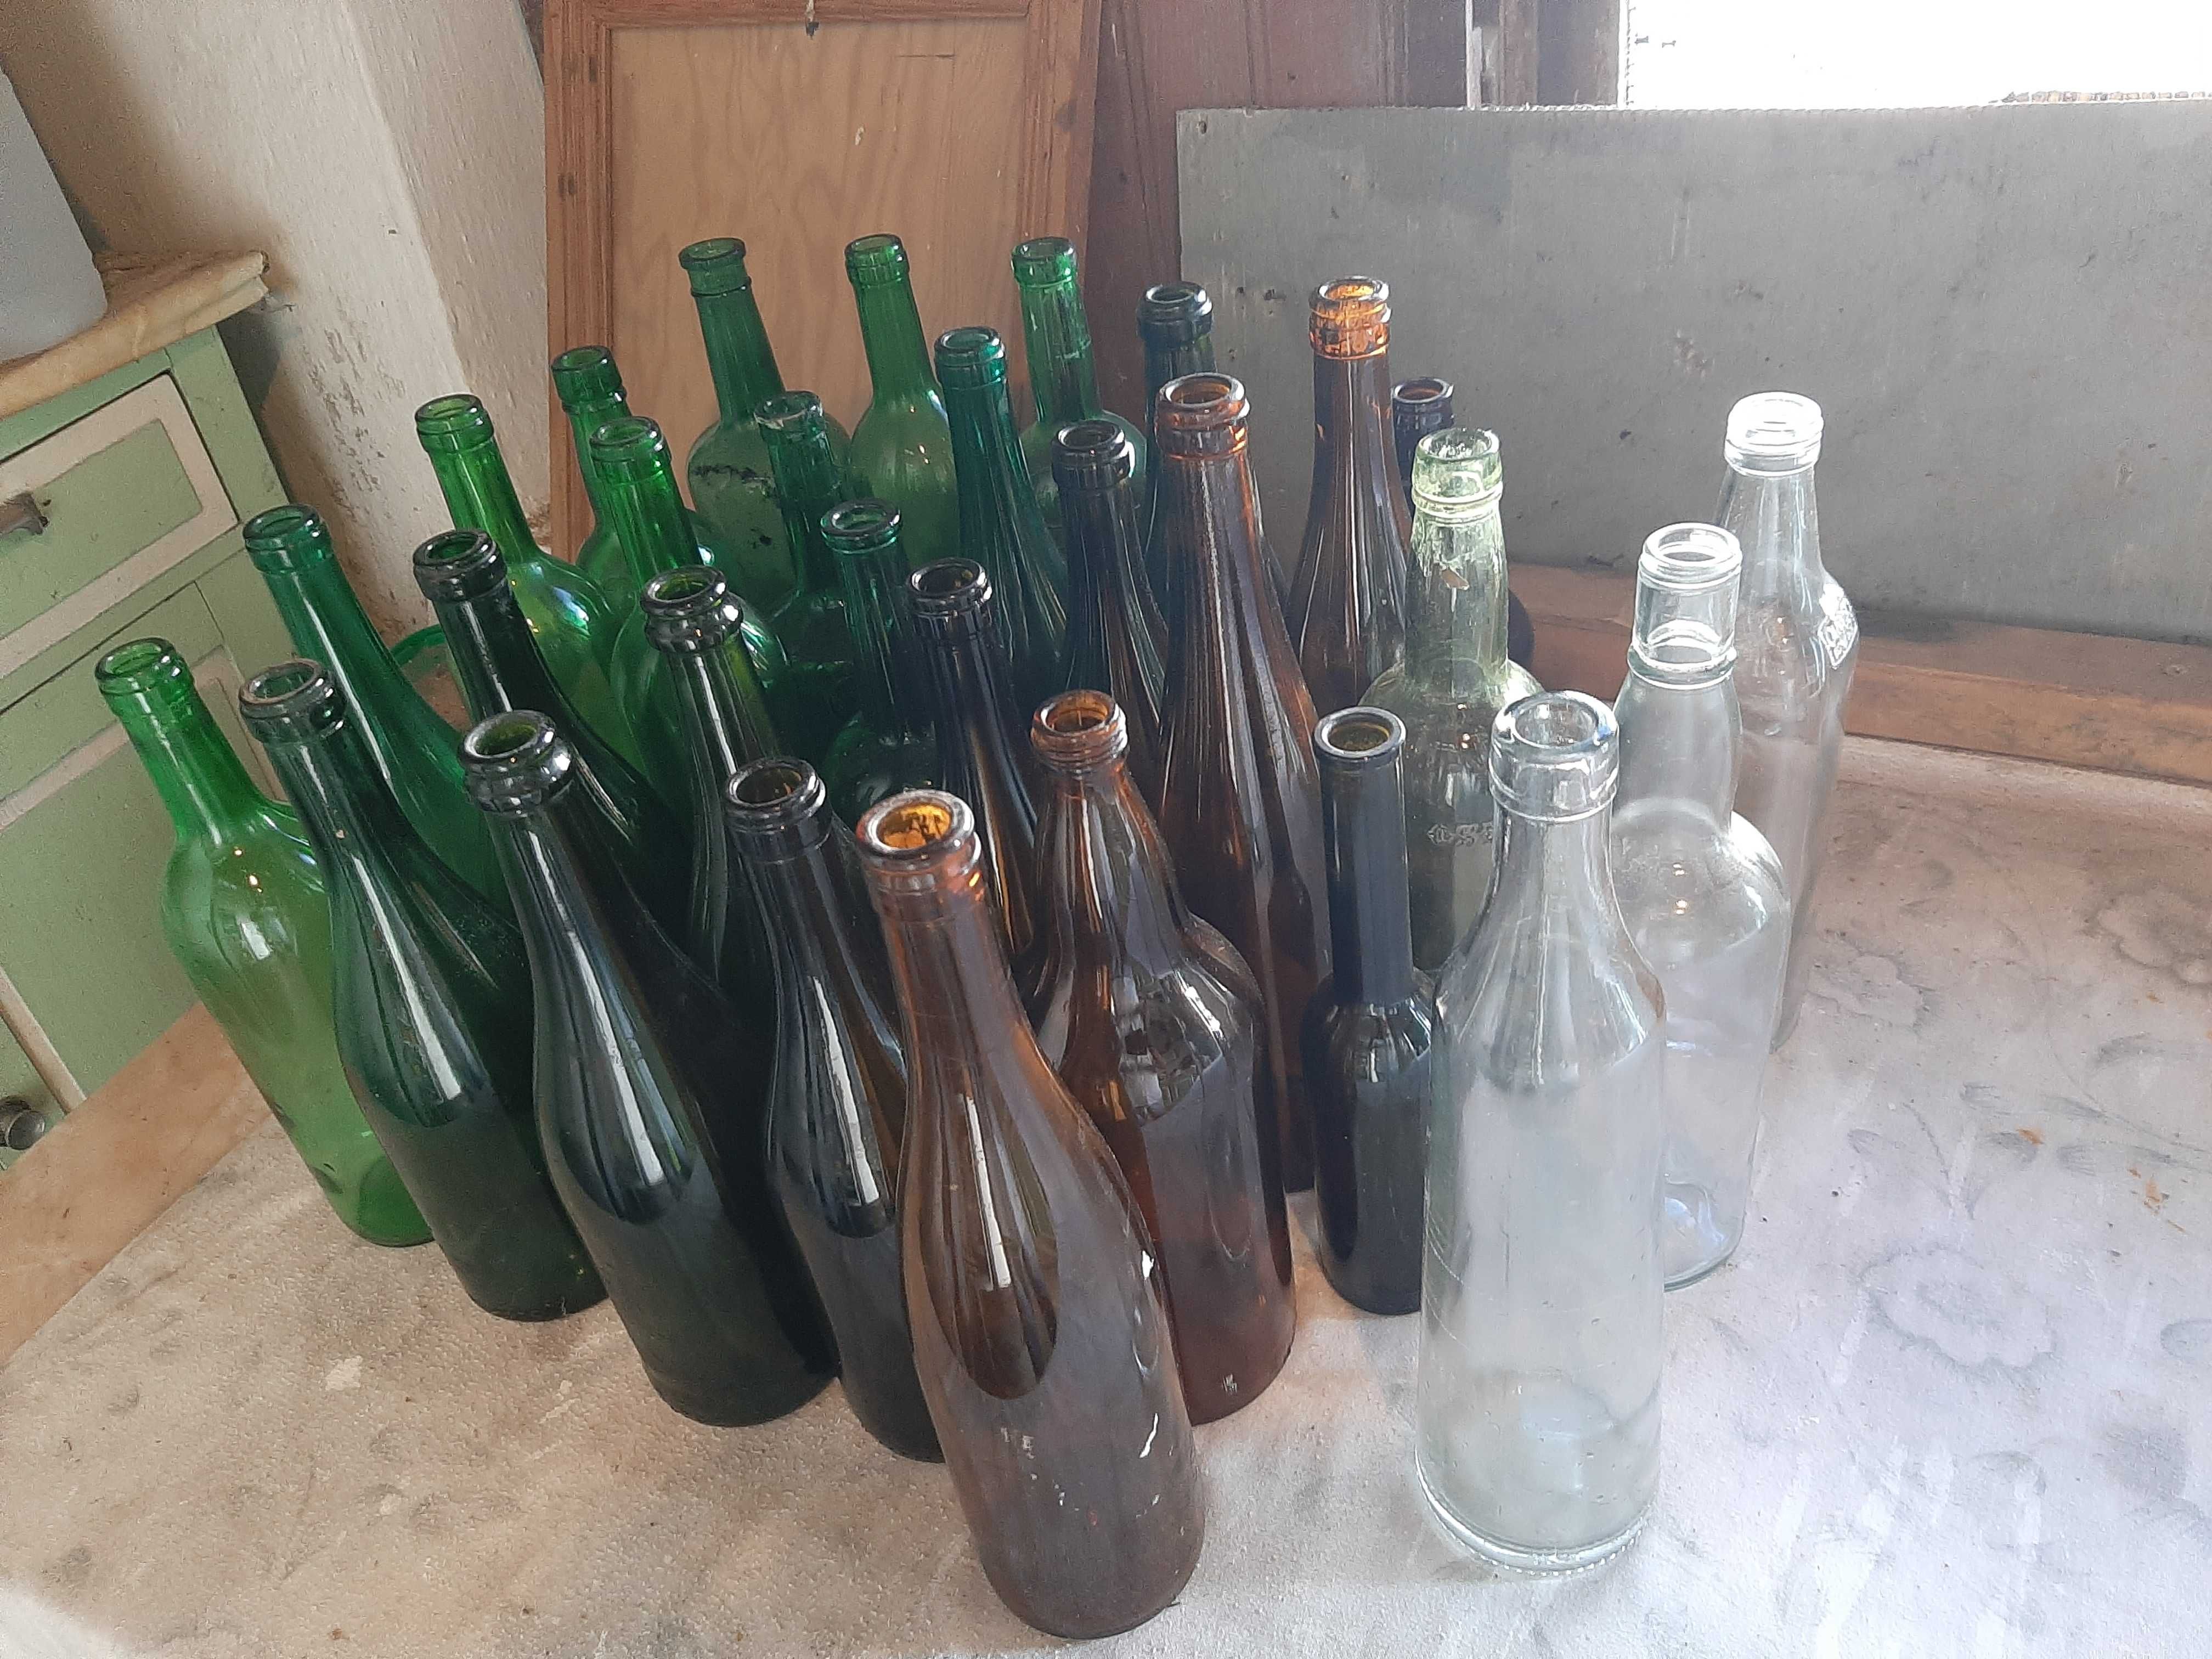 43 garrafas novas.verdes.castanhas e brancas.